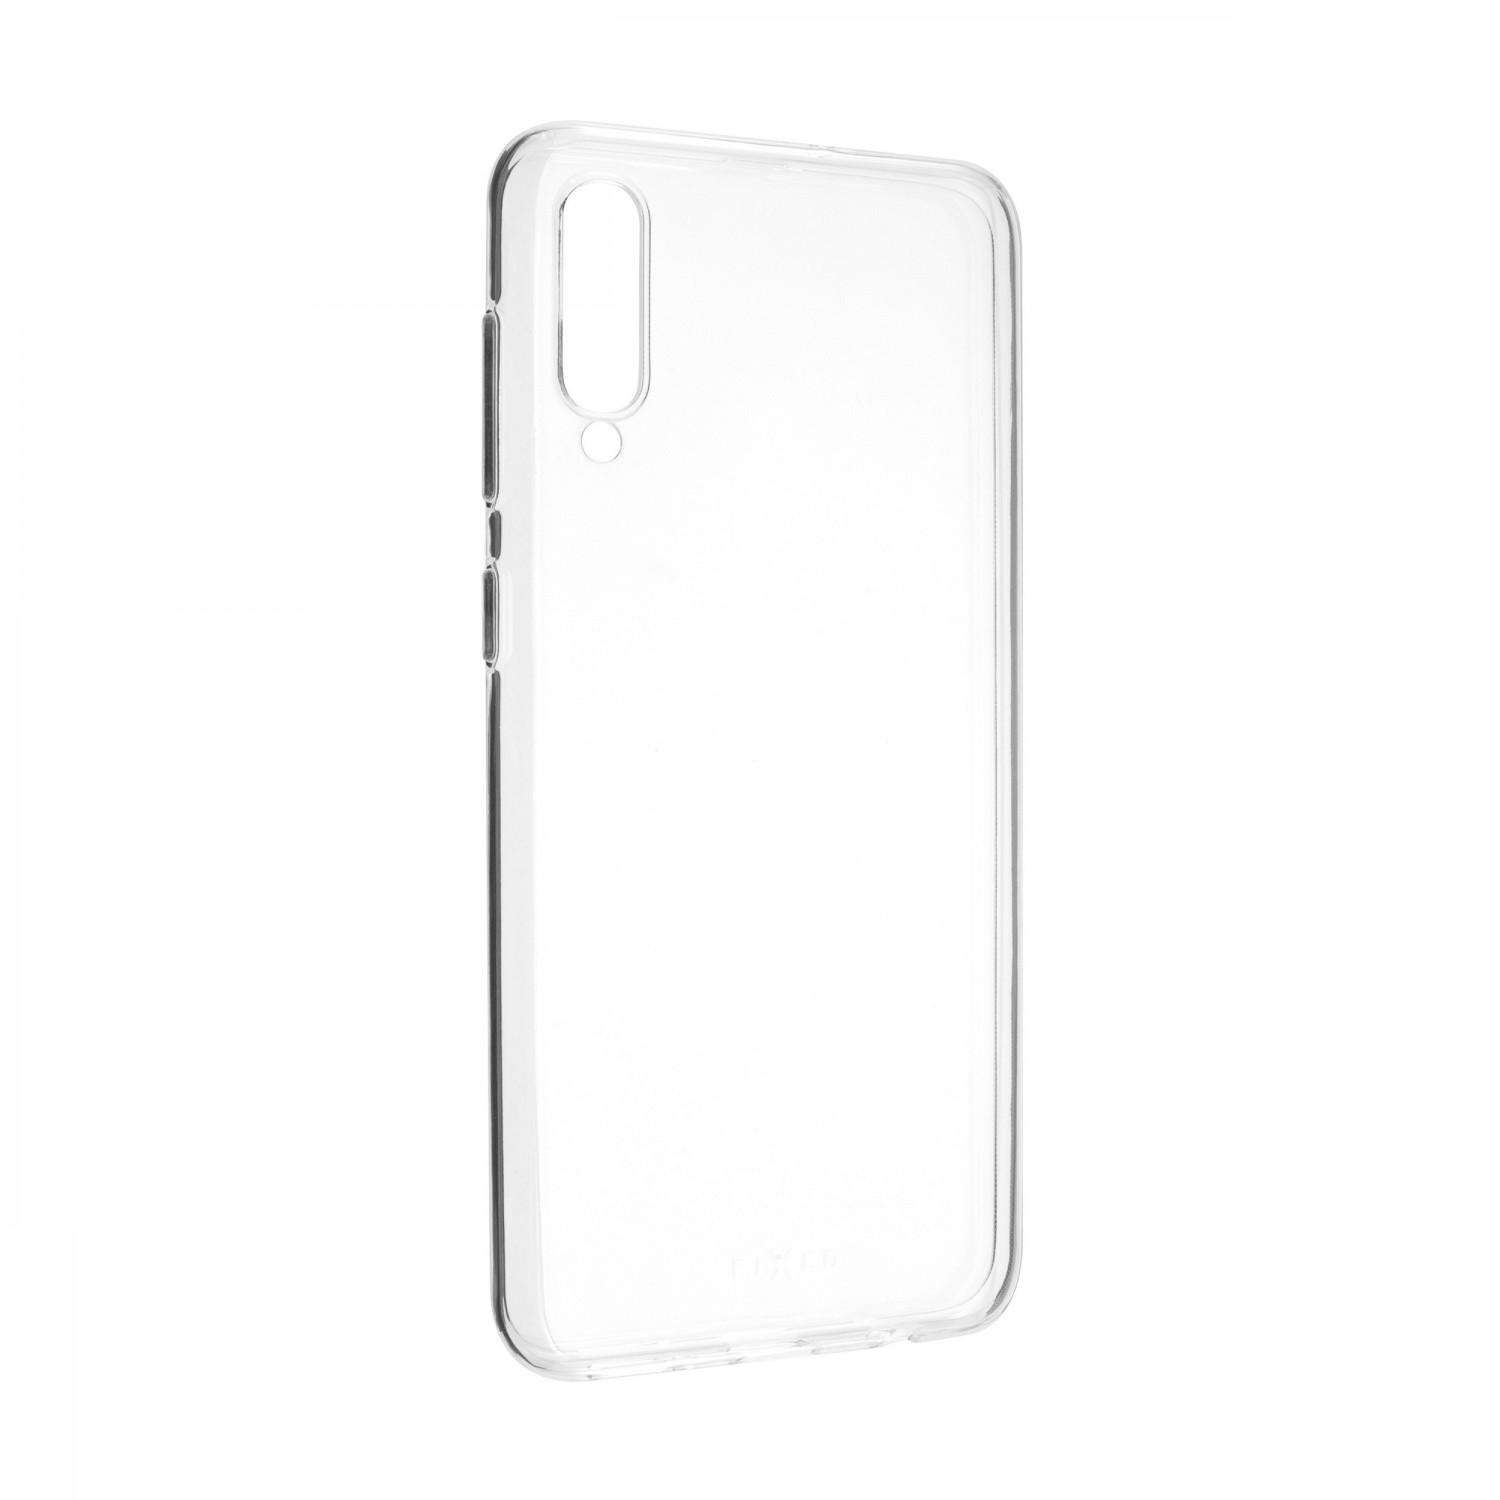 Ultratenké silikonové pouzdro FIXED Skin pro Samsung Galaxy A50, transparentní